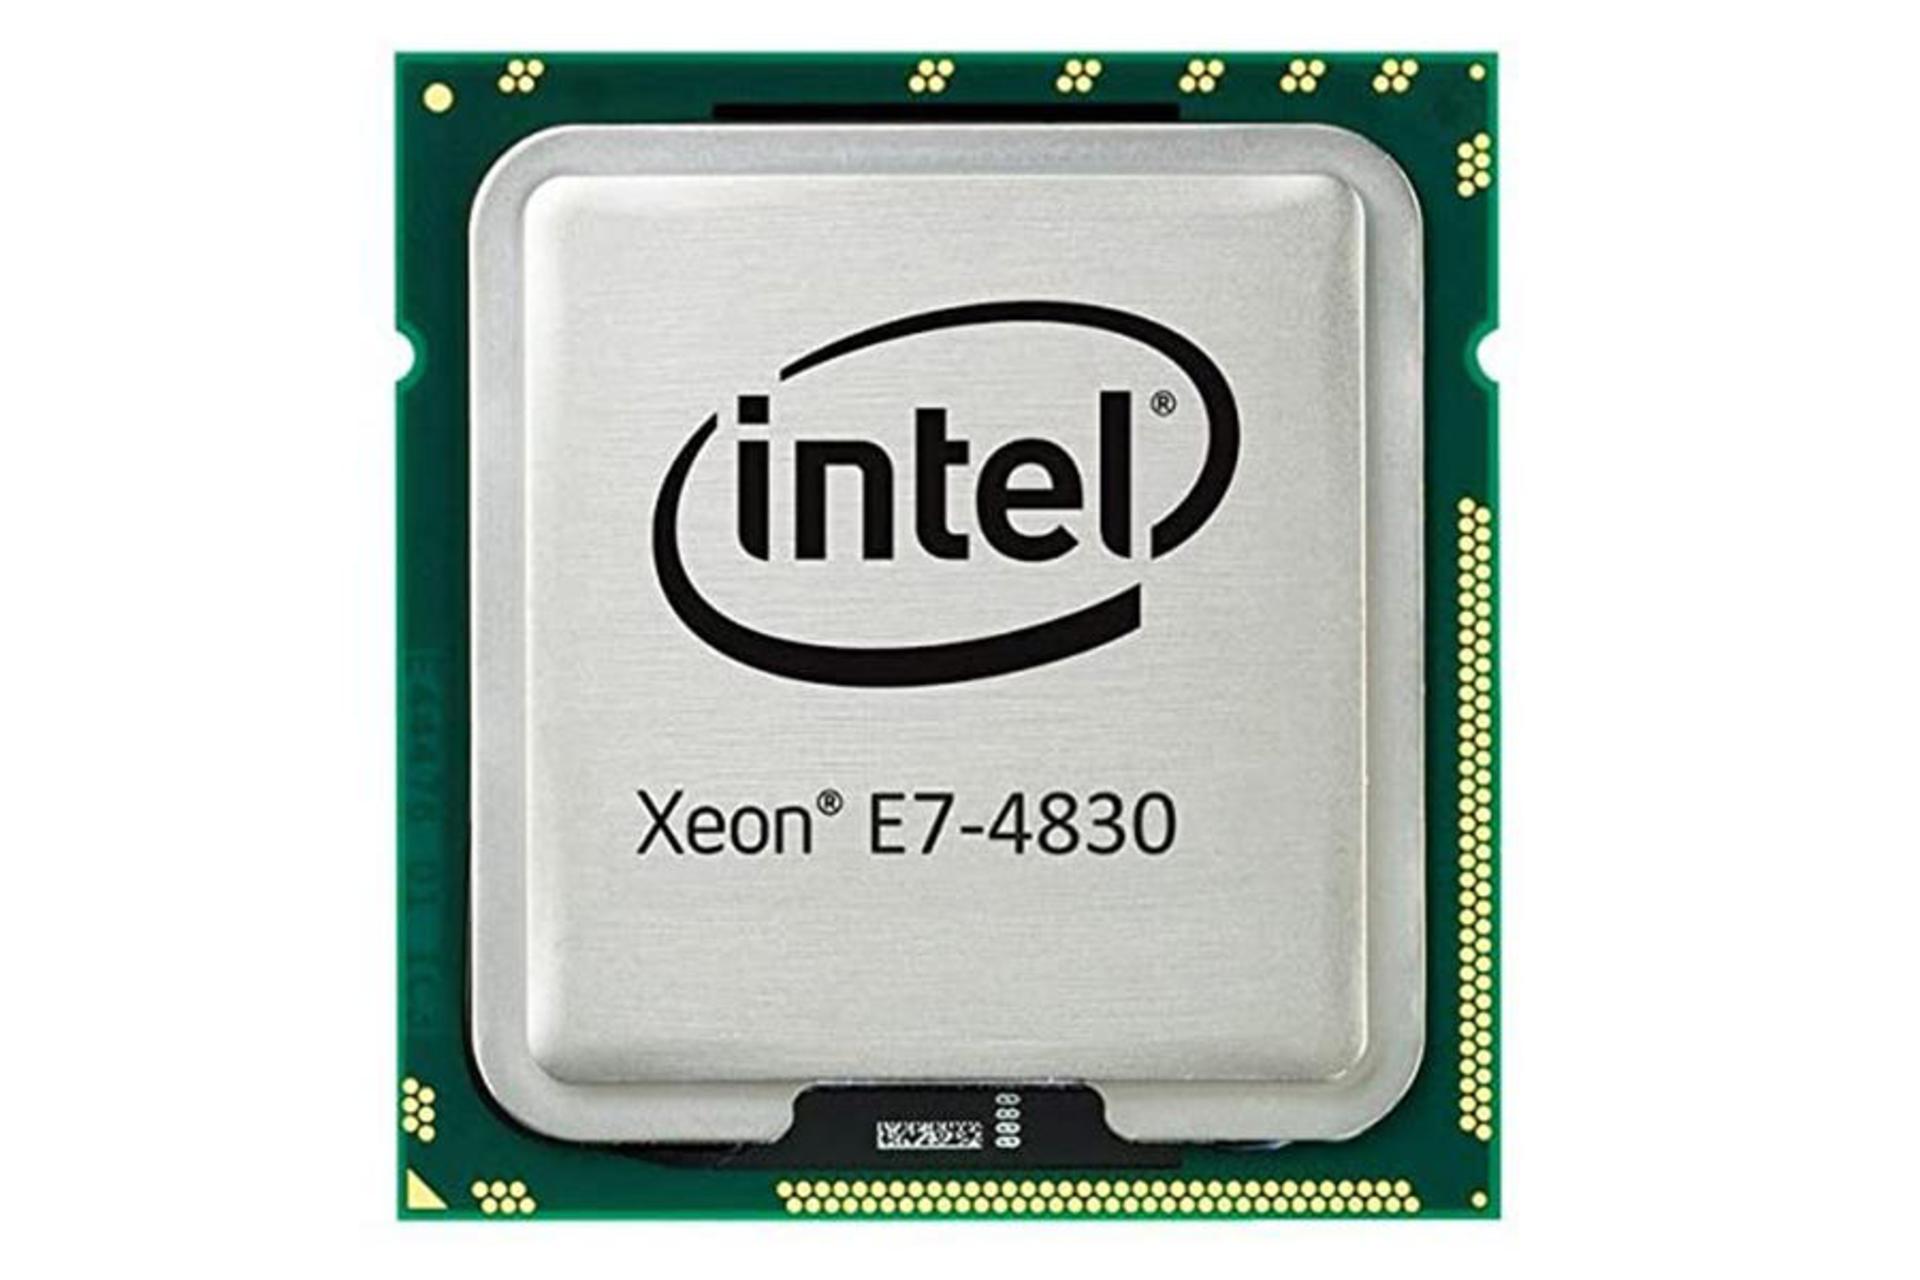 Intel Xeon E7-4830 / اینتل Xeon E7-4830